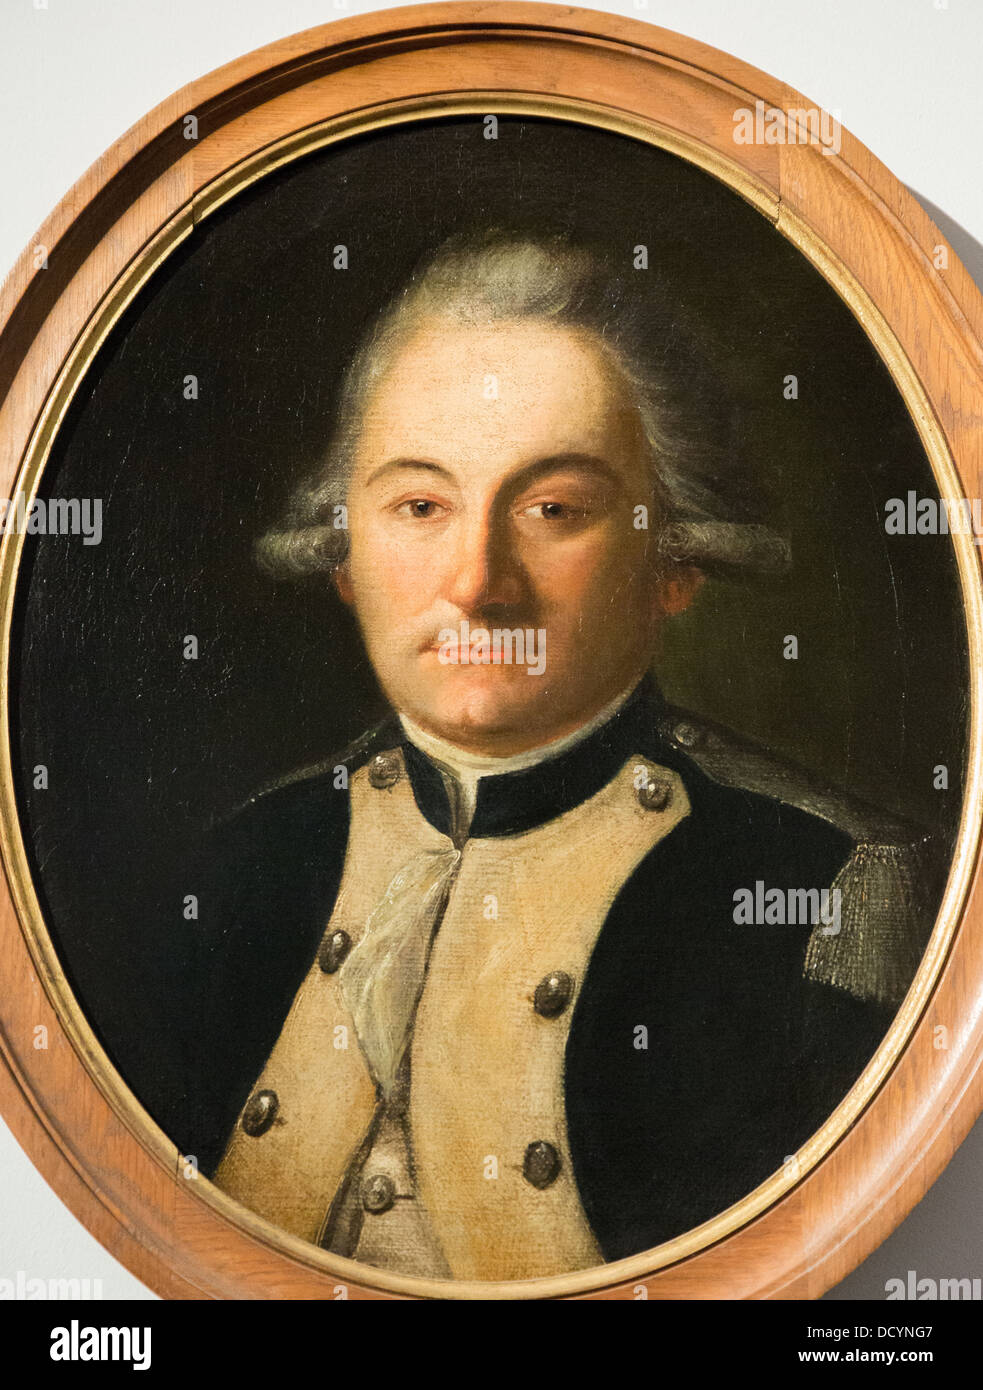 18. Jahrhundert - Offizier von dem Regiment der Infanterie Royal-Deux-Ponts - anonyme 1786 - Musée de l'Armée Öl auf Leinwand Stockfoto